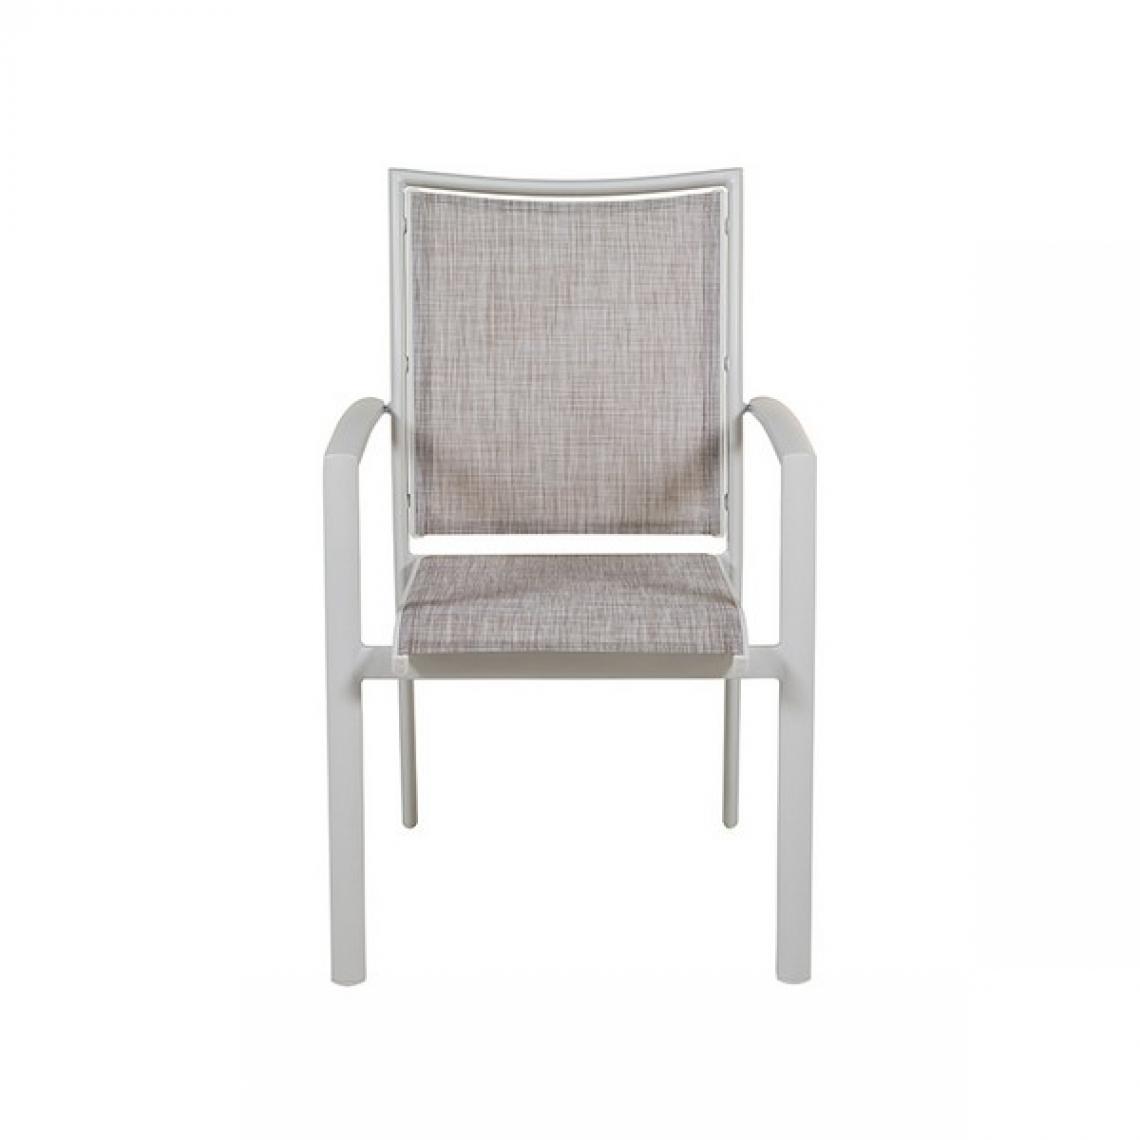 Unknown - Chaise de jardin (57 x 66 x 90 cm) - Chaises